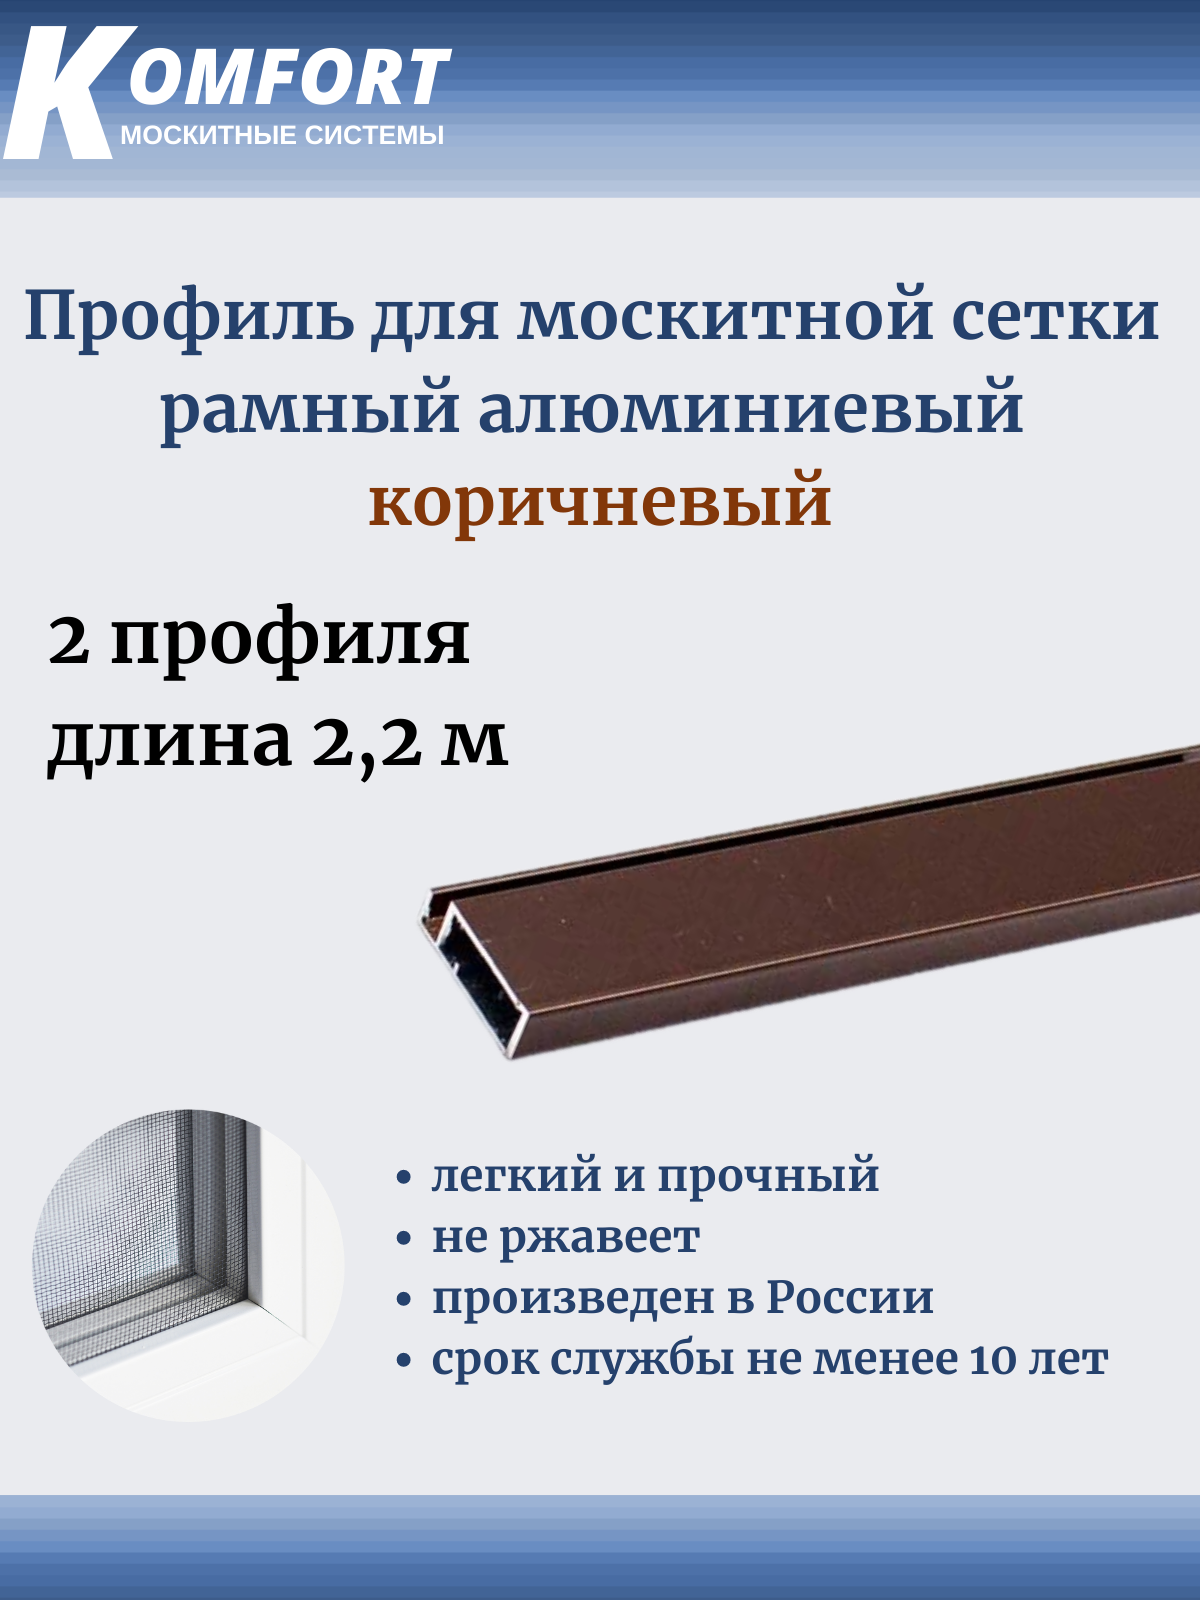 Профиль для москитной сетки рамный алюминиевый коричневый 2,2 м 2 шт